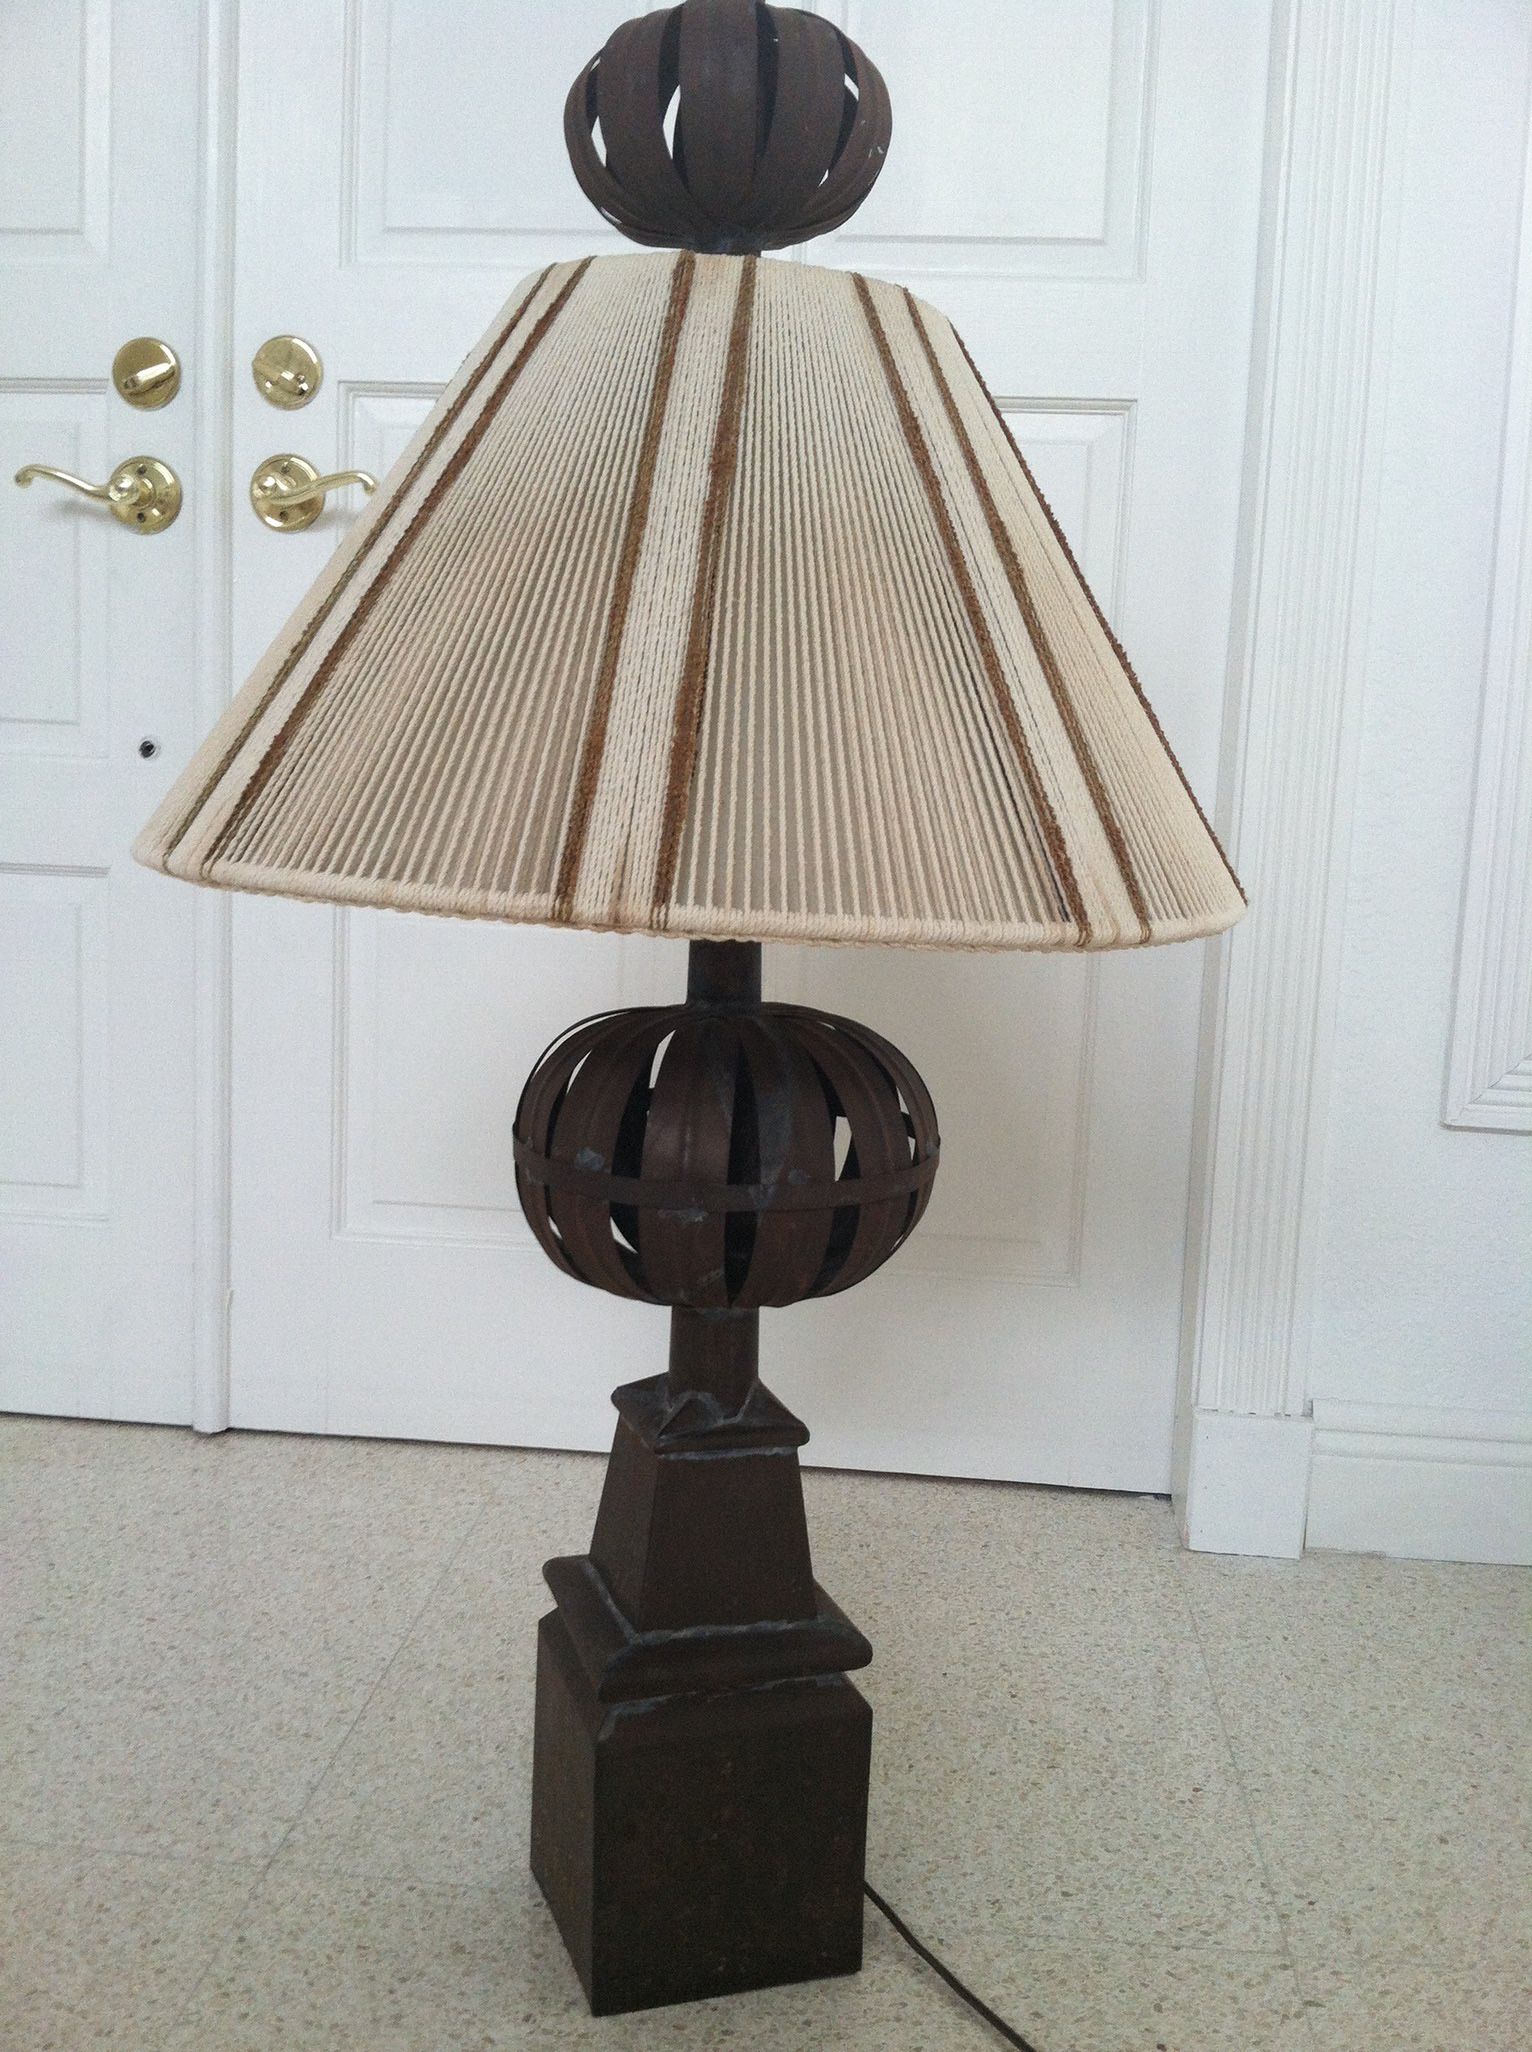 Custom metal sculptured lamp